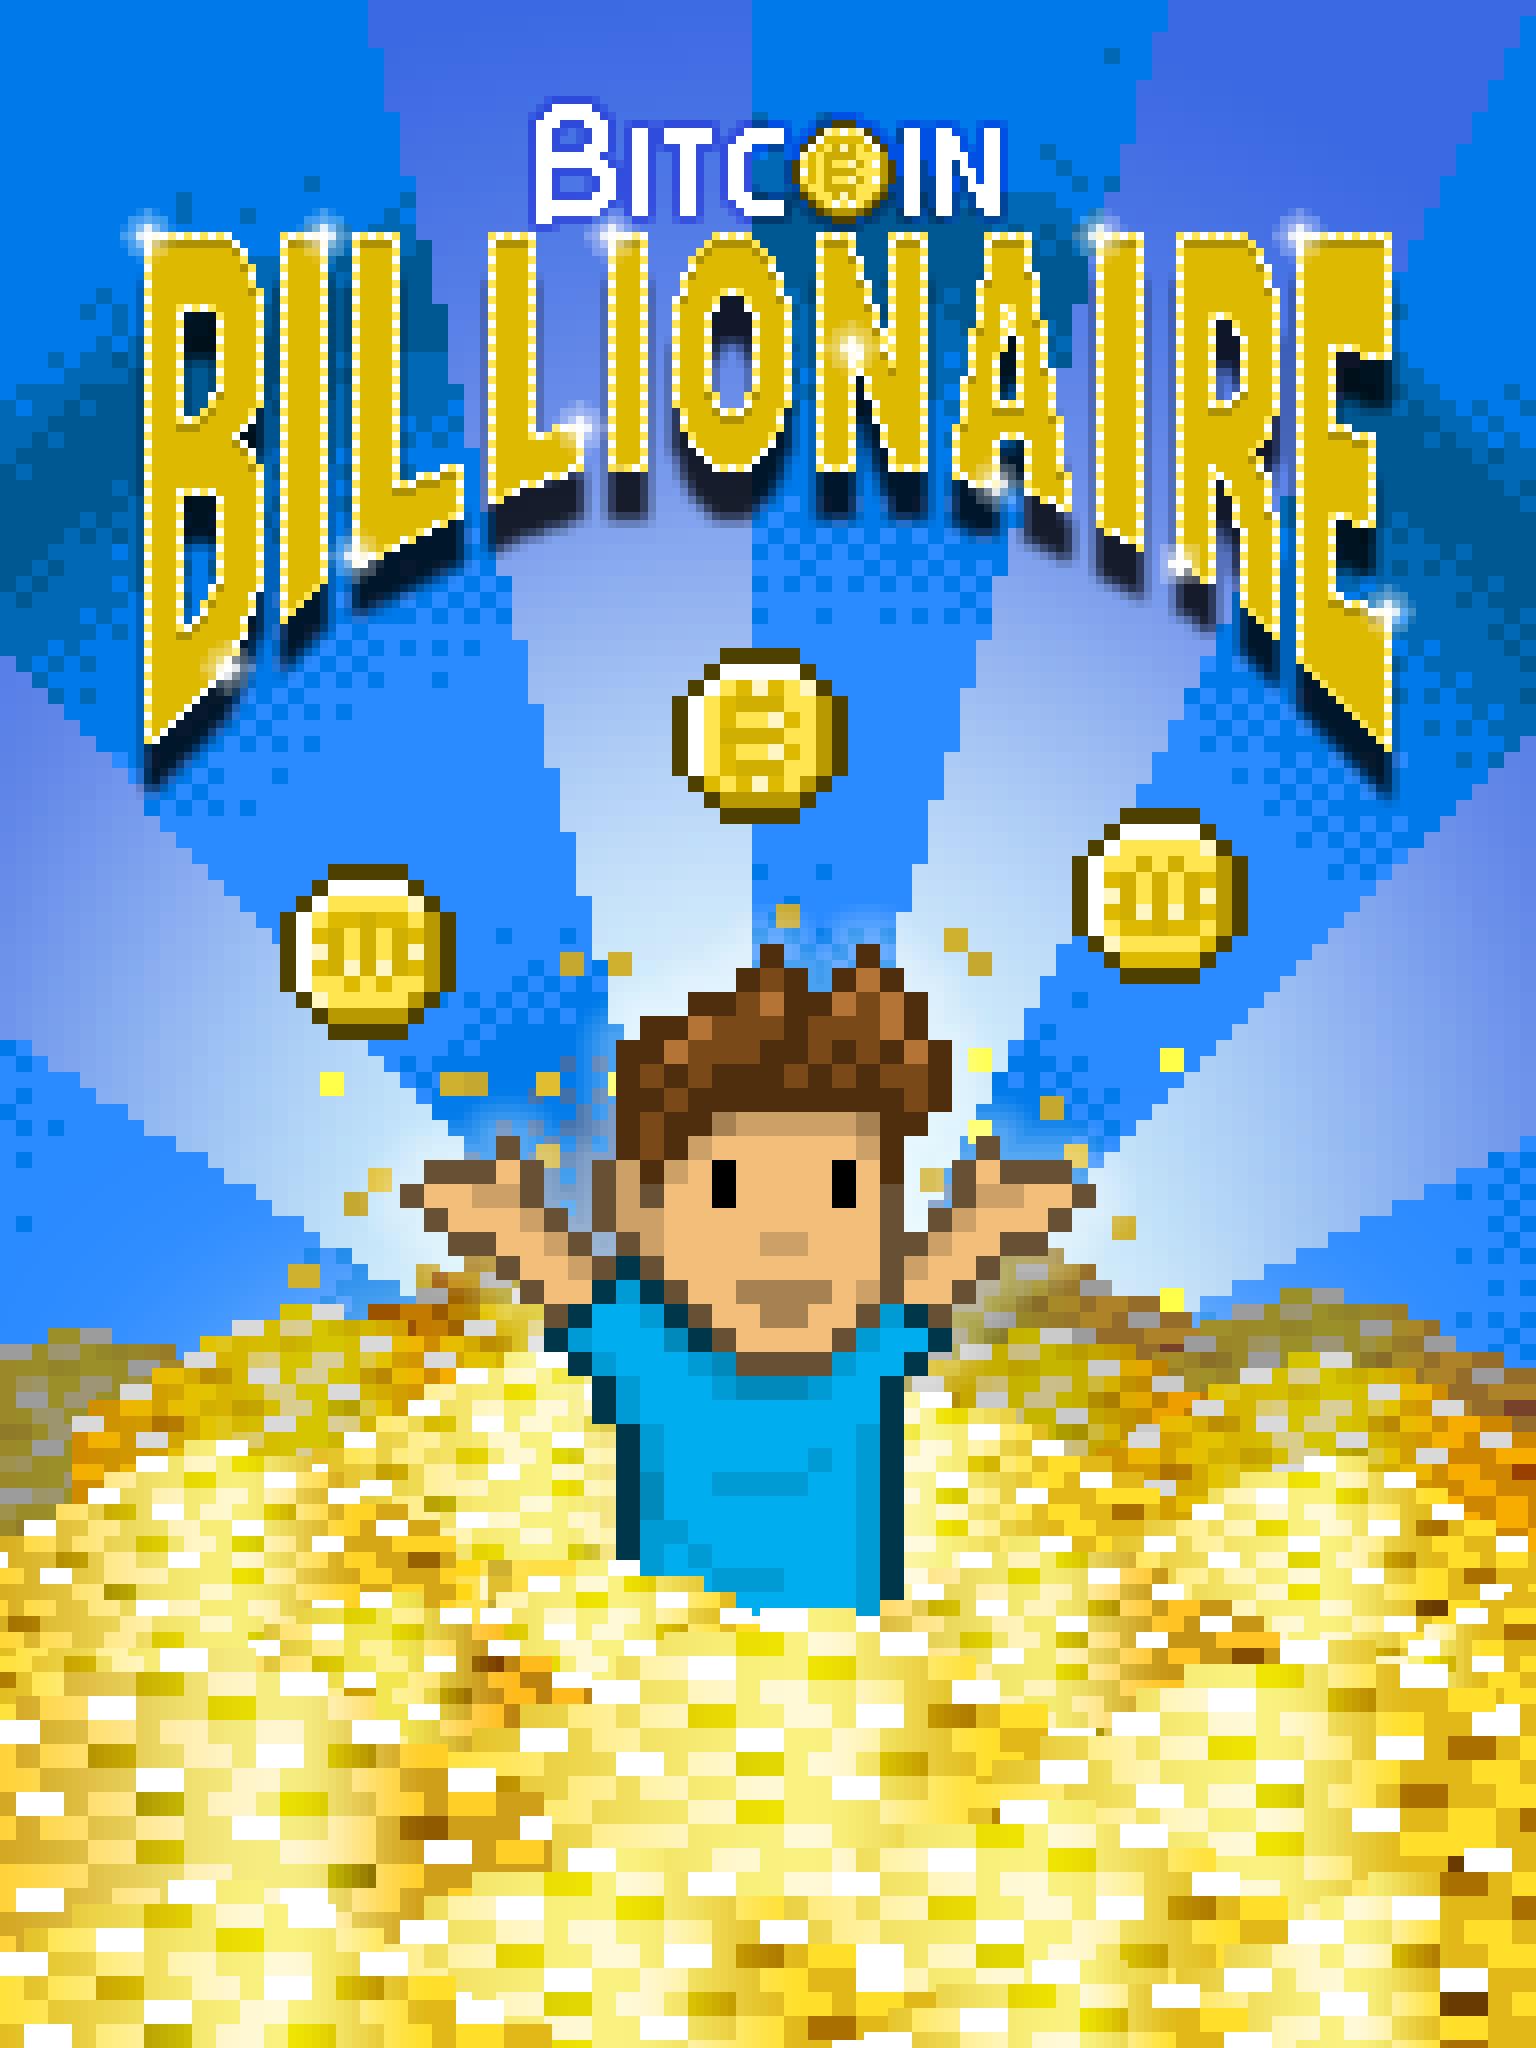 Bitcoin Billionaire - Fake Bitcoins, Real Fun 4.14.1 Screenshot 21